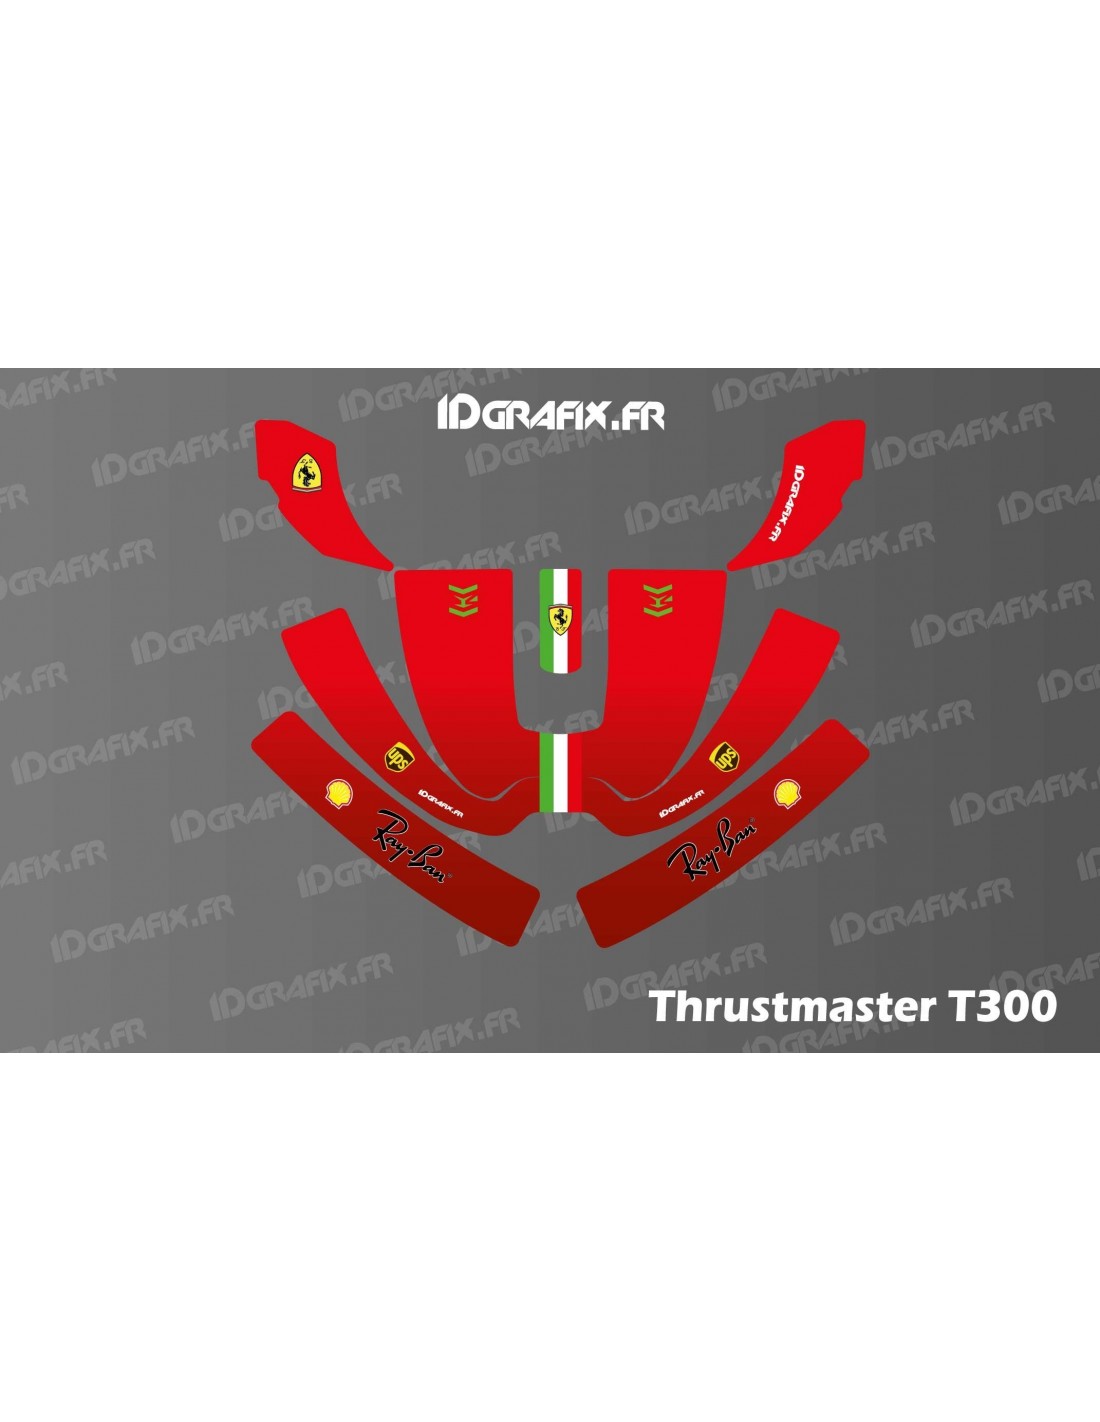 Adesivo Ferrari F1 Edition - Volante simulatore Thrustmaster T300 